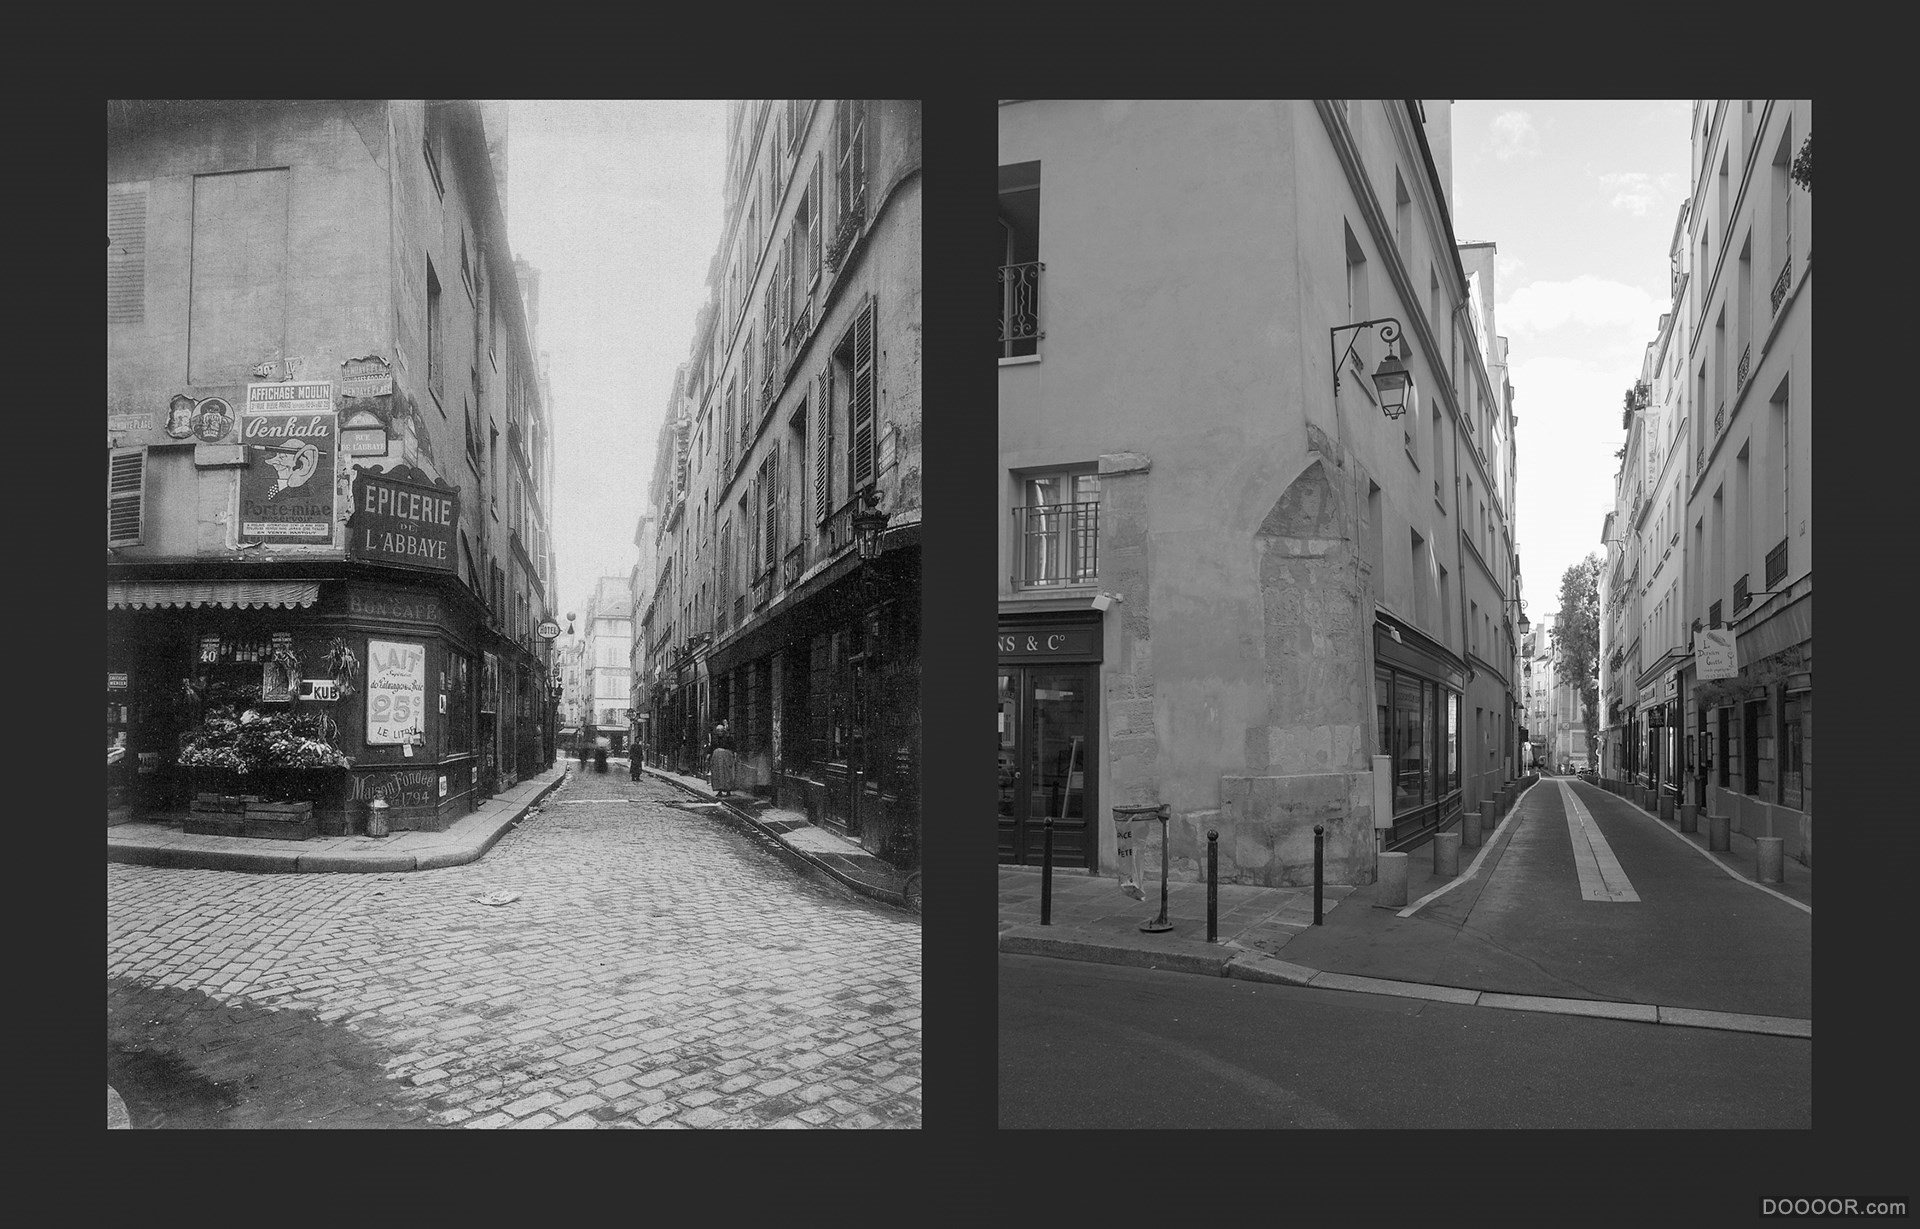 过去与现在-巴黎街头照片对比 [50P] (17).jpg